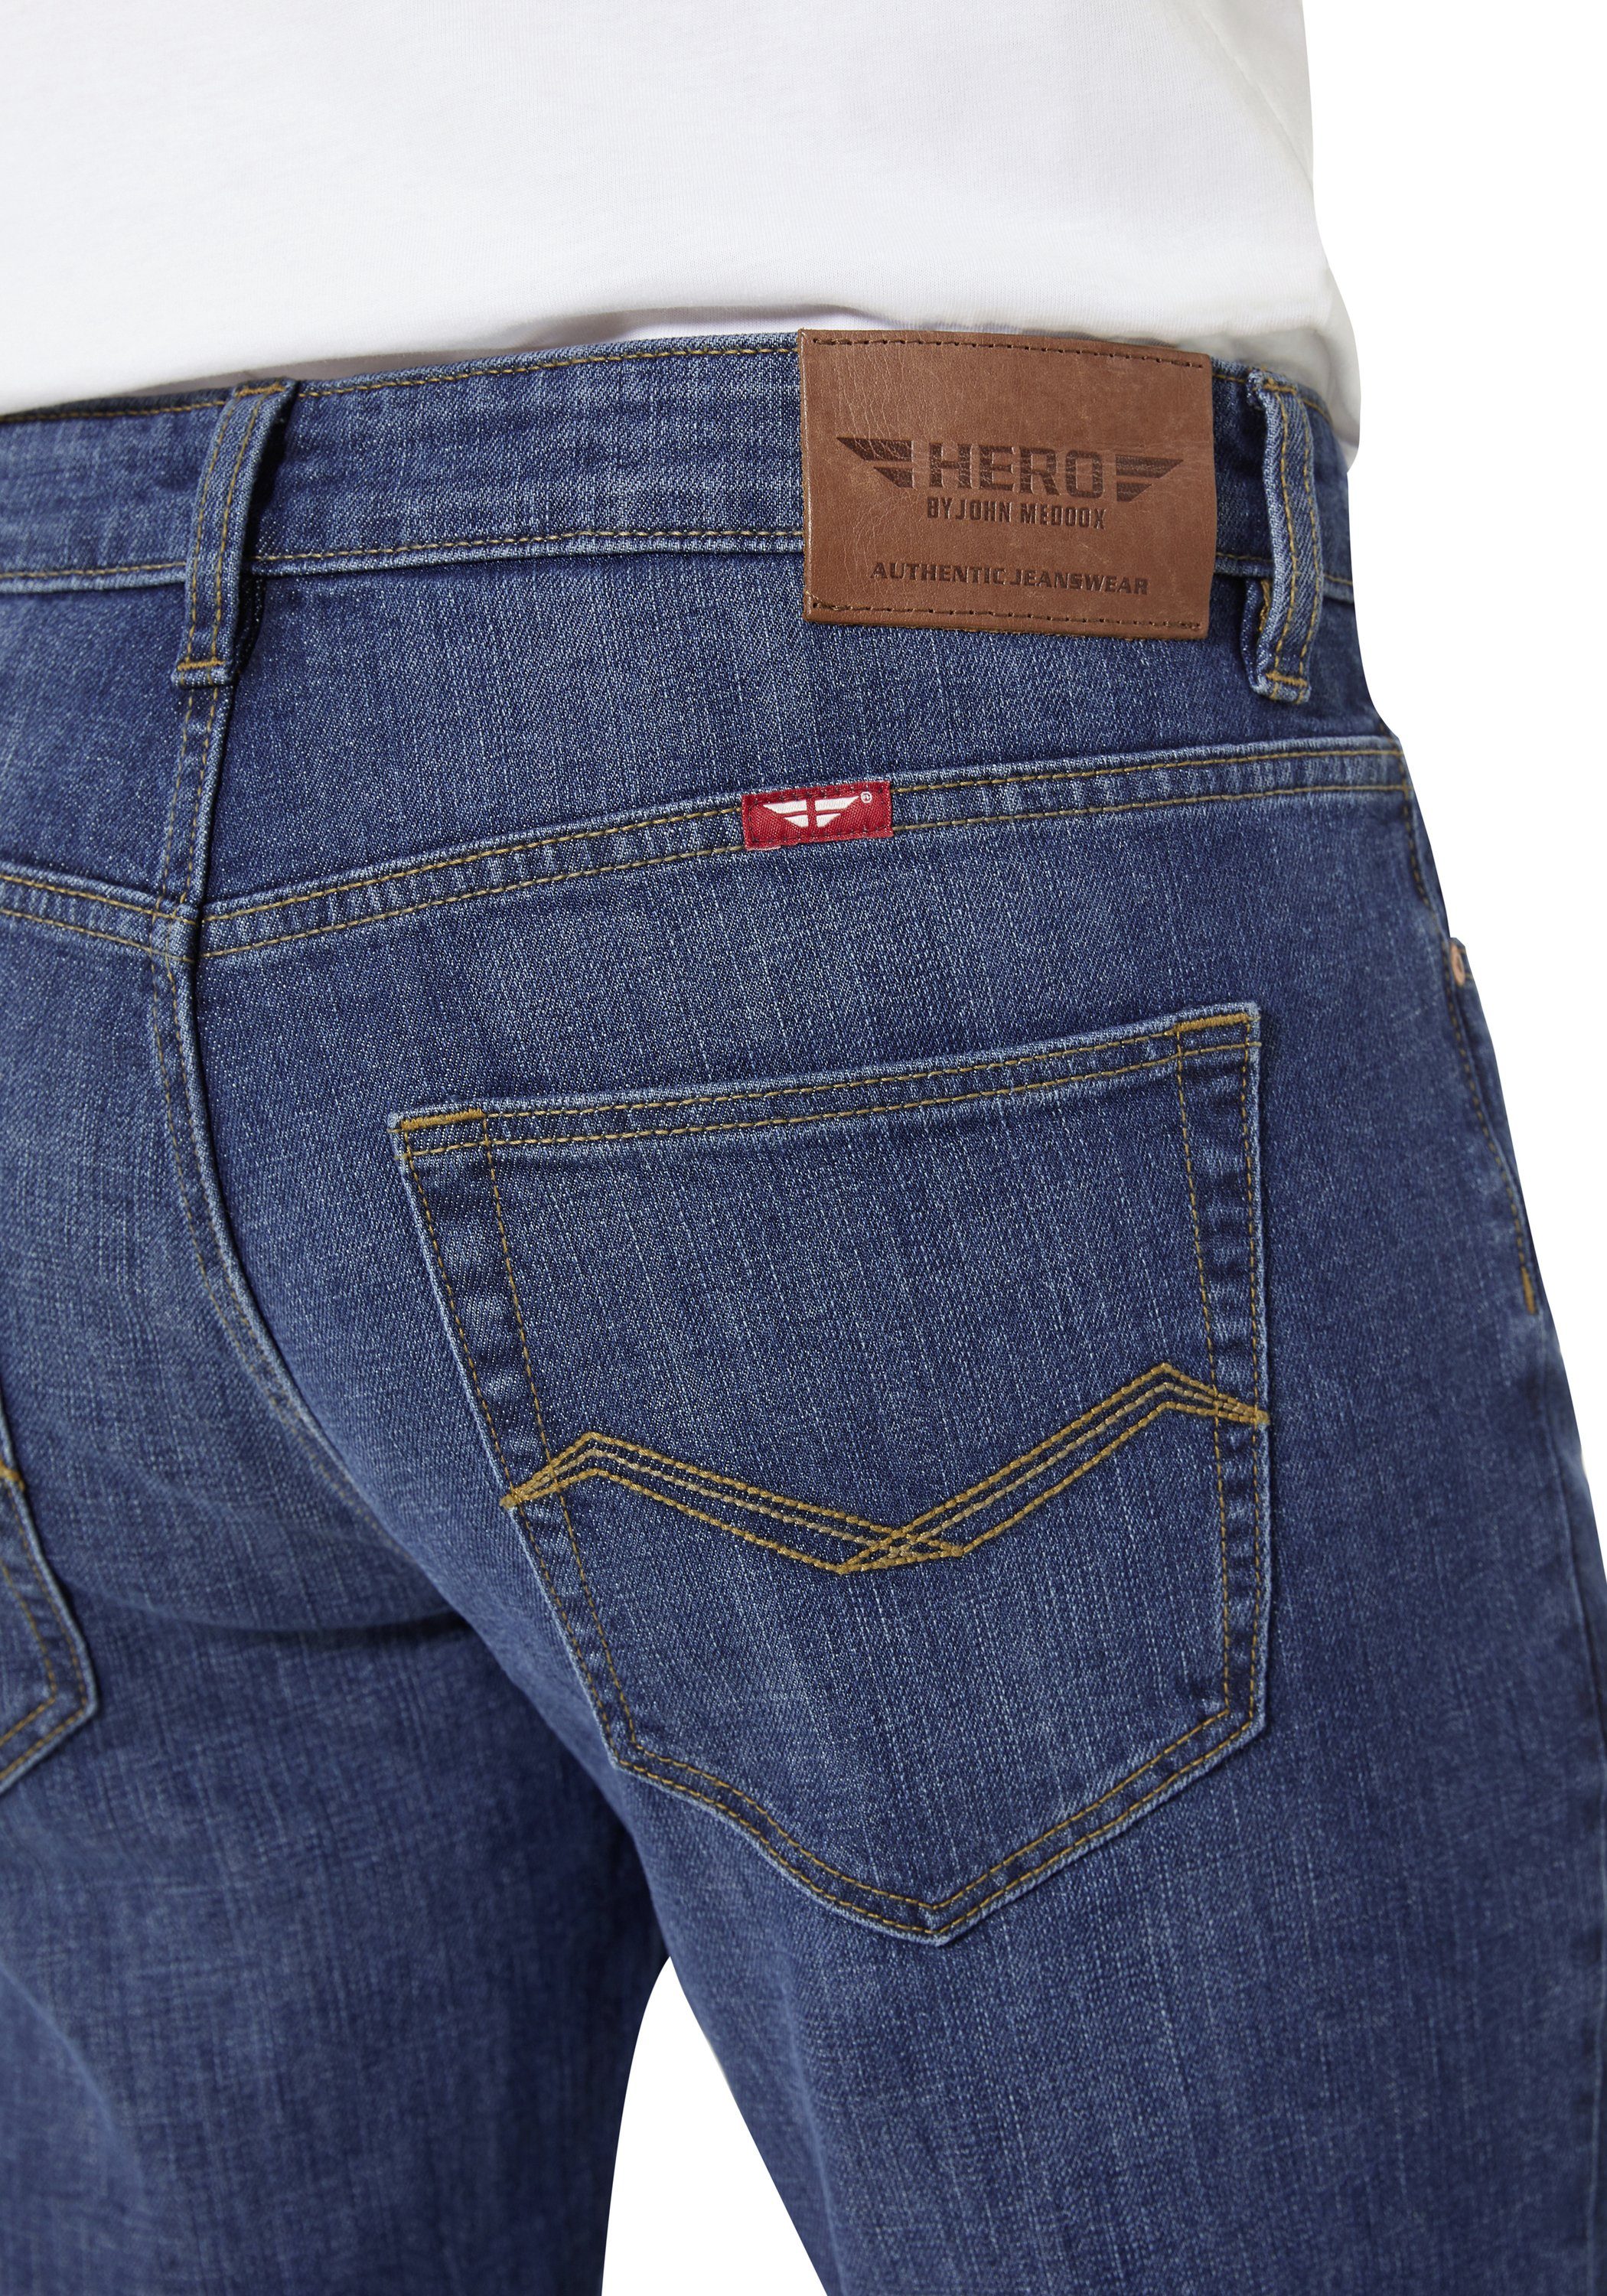 5-Pocket-Jeans John midblue Straight Denver Medoox HERO Stretch used by Regular